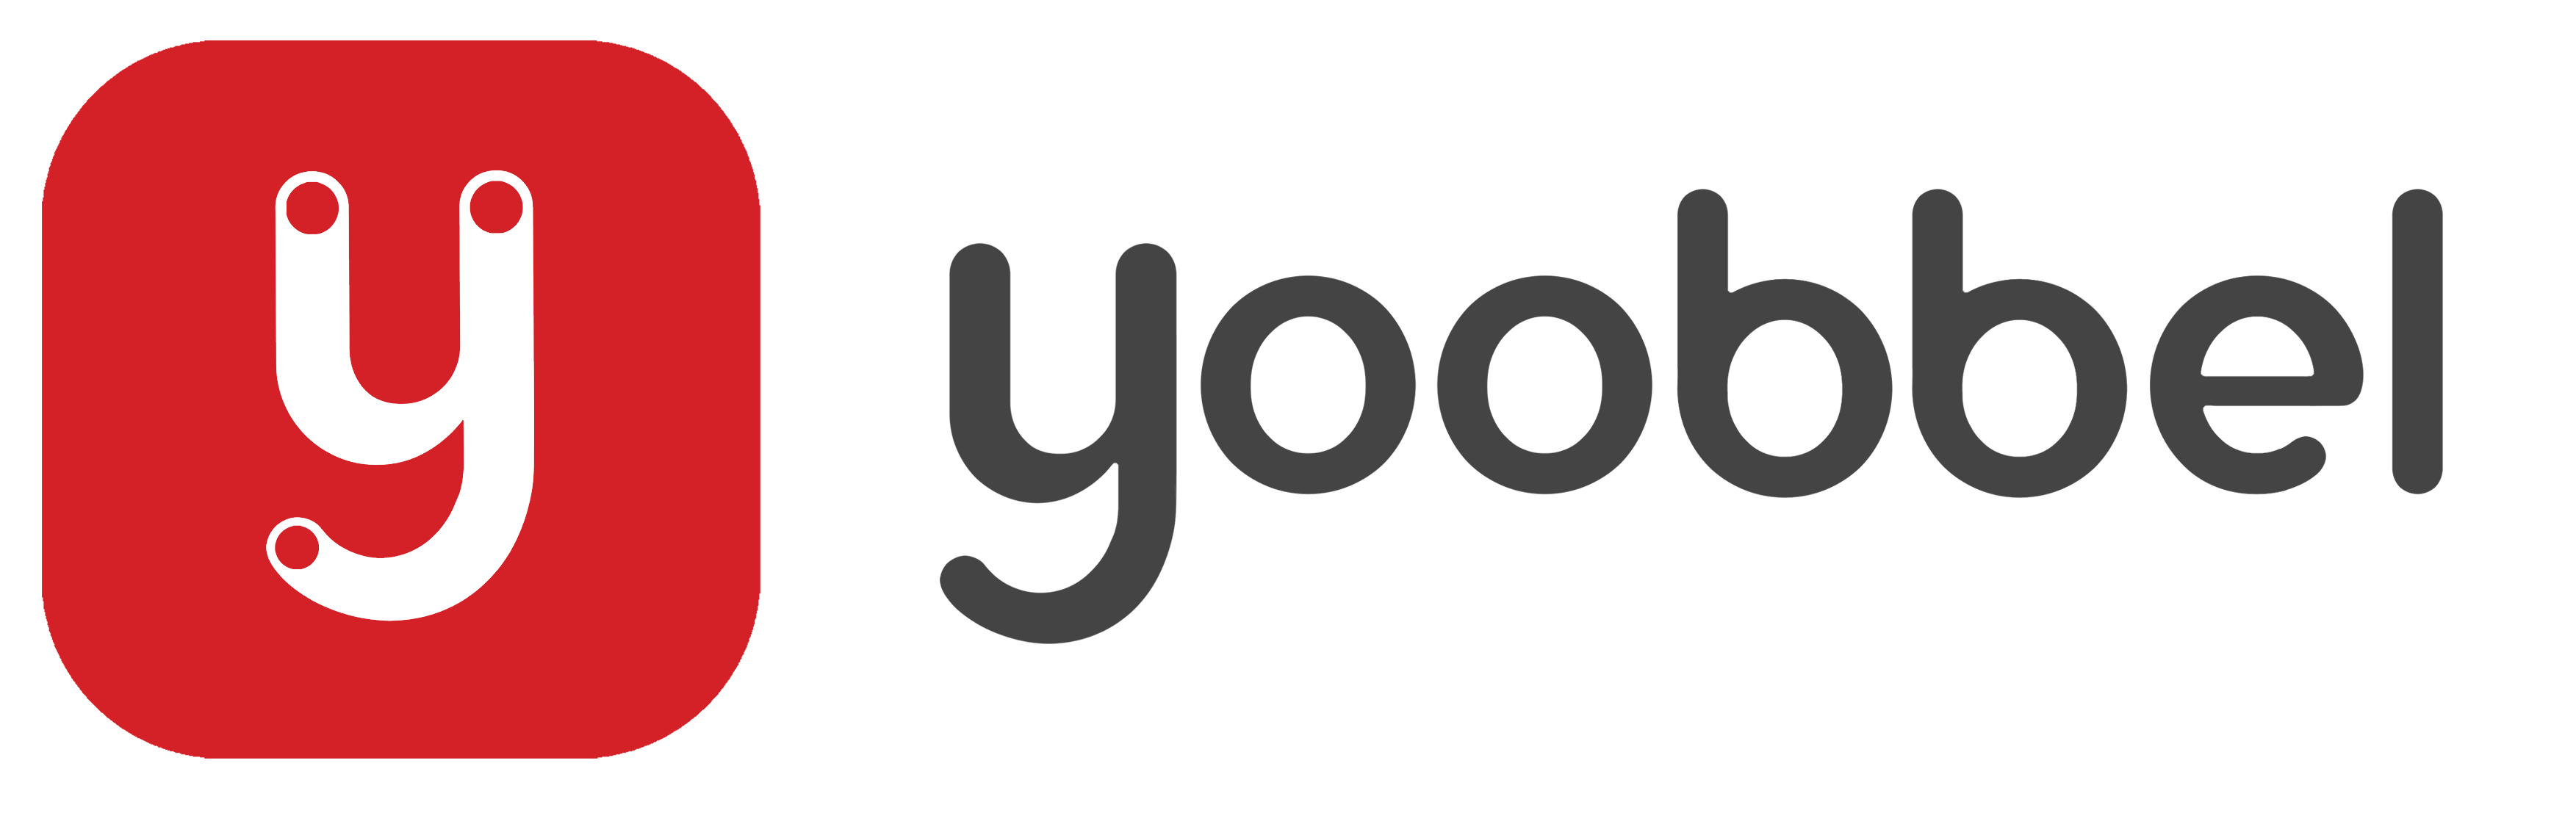 DevBlog's Logo